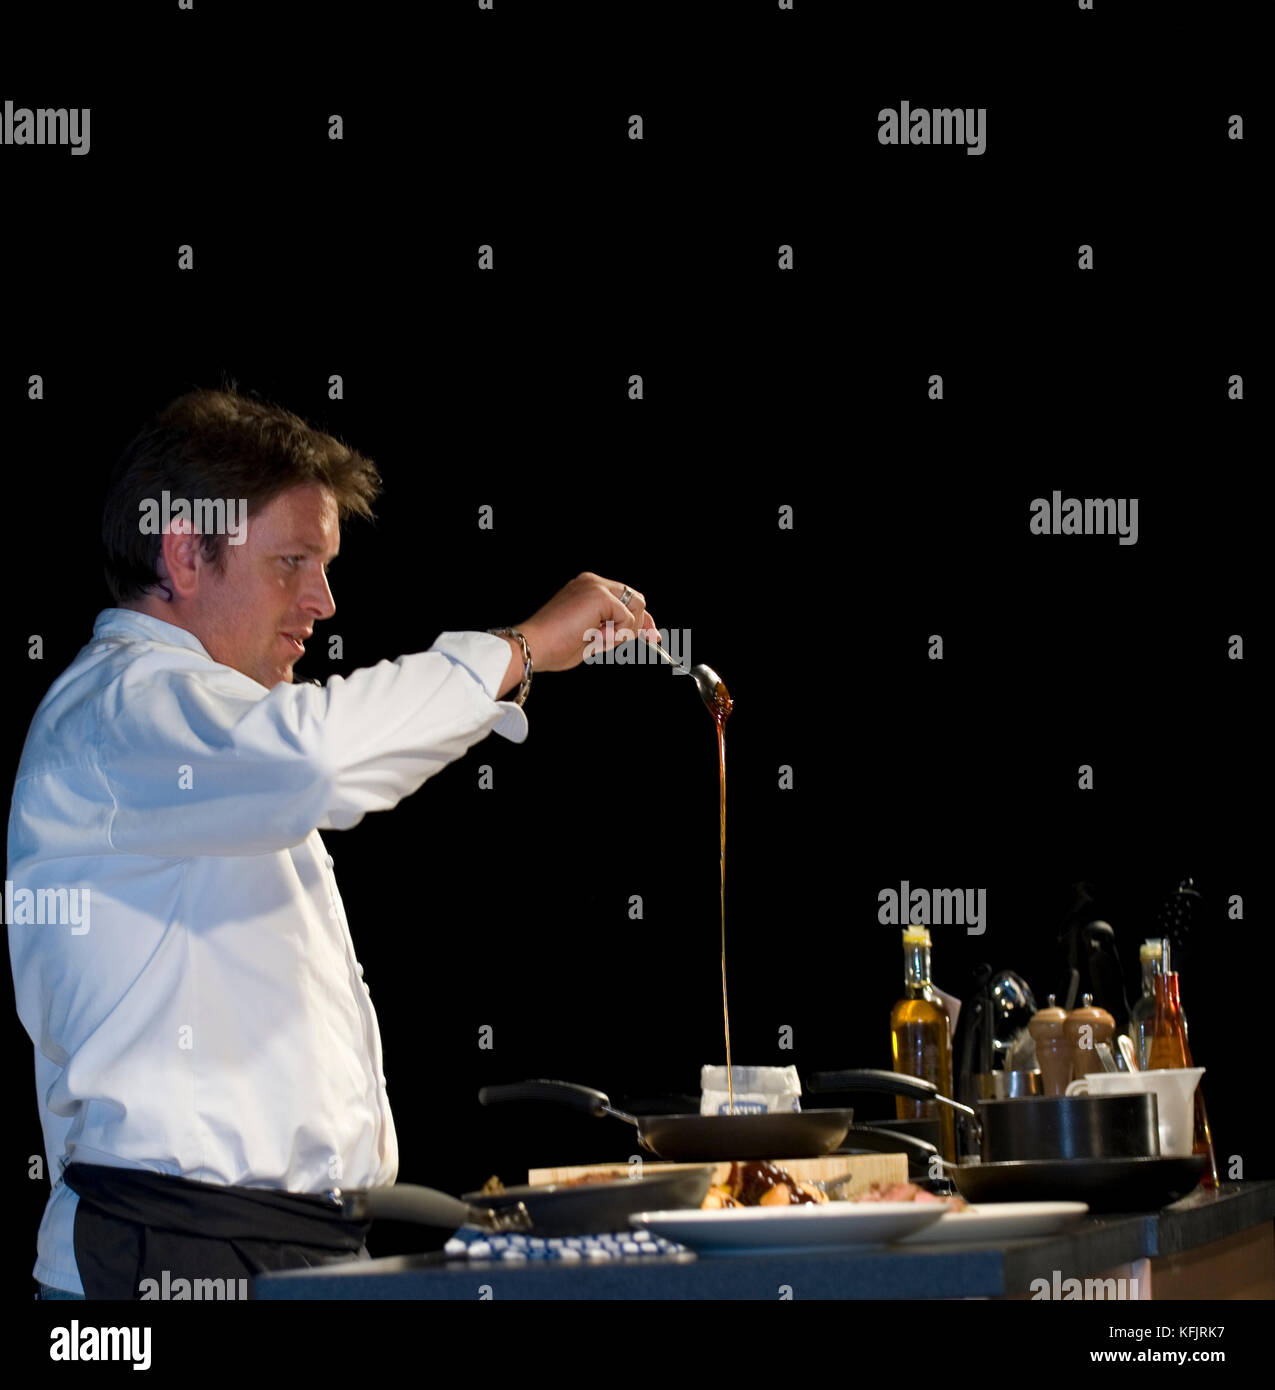 Prominente TV-Koch James Martin die Zubereitung von Speisen im TV-Studio Küche Stockfoto